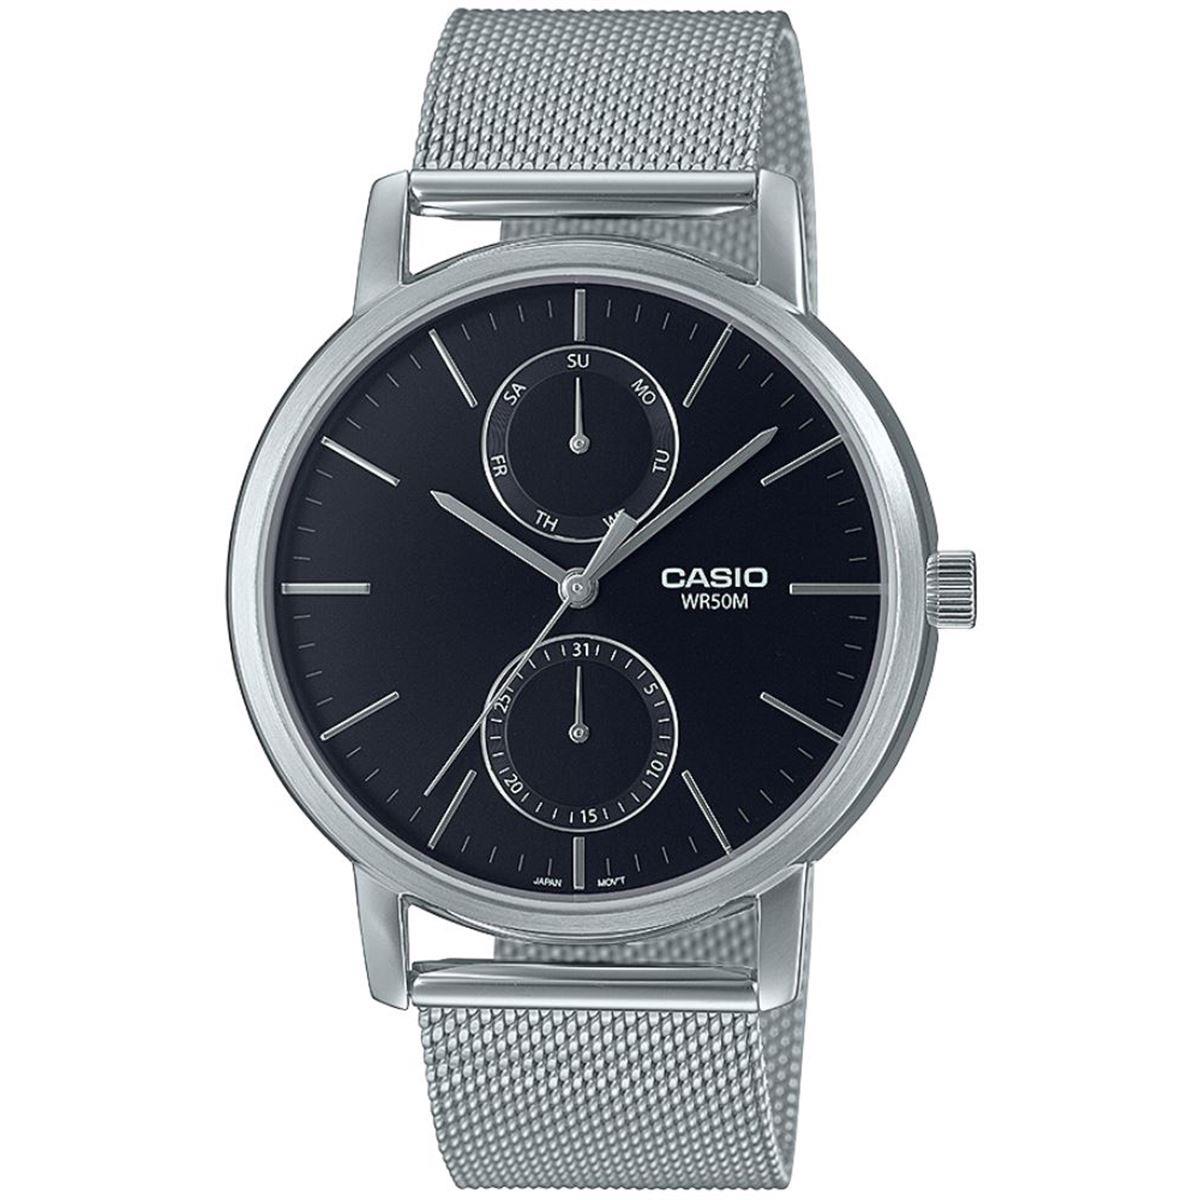 Casio MTP-B310M-1AVDF Enticer Men's Watch